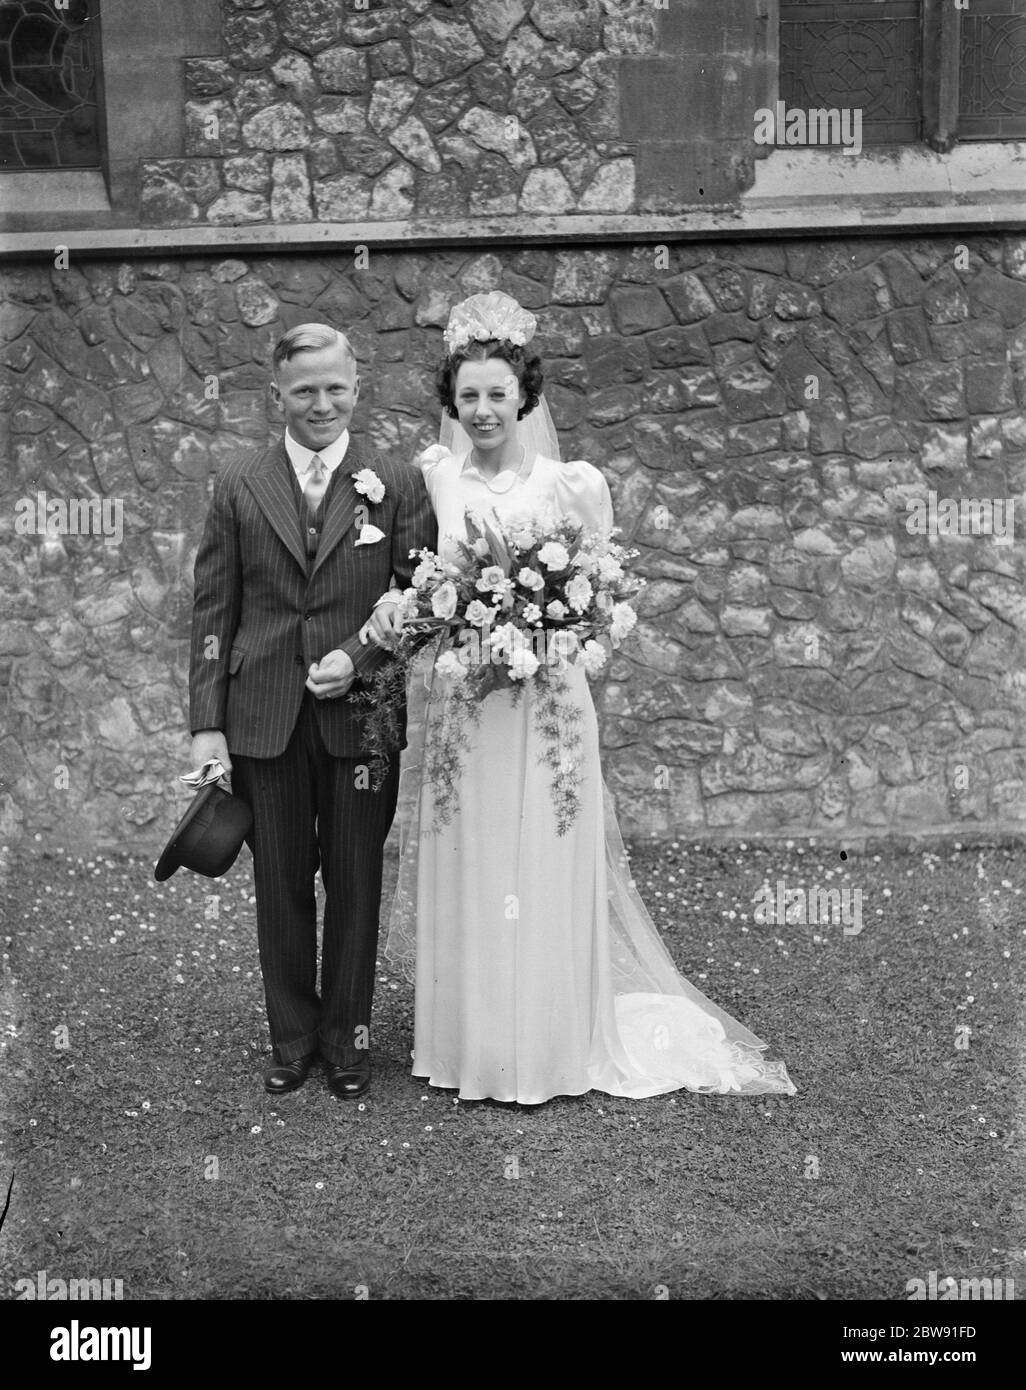 Le mariage de M. Lewis W Jackson et de Mlle D M Allen . La mariée et le marié . 1939 Banque D'Images